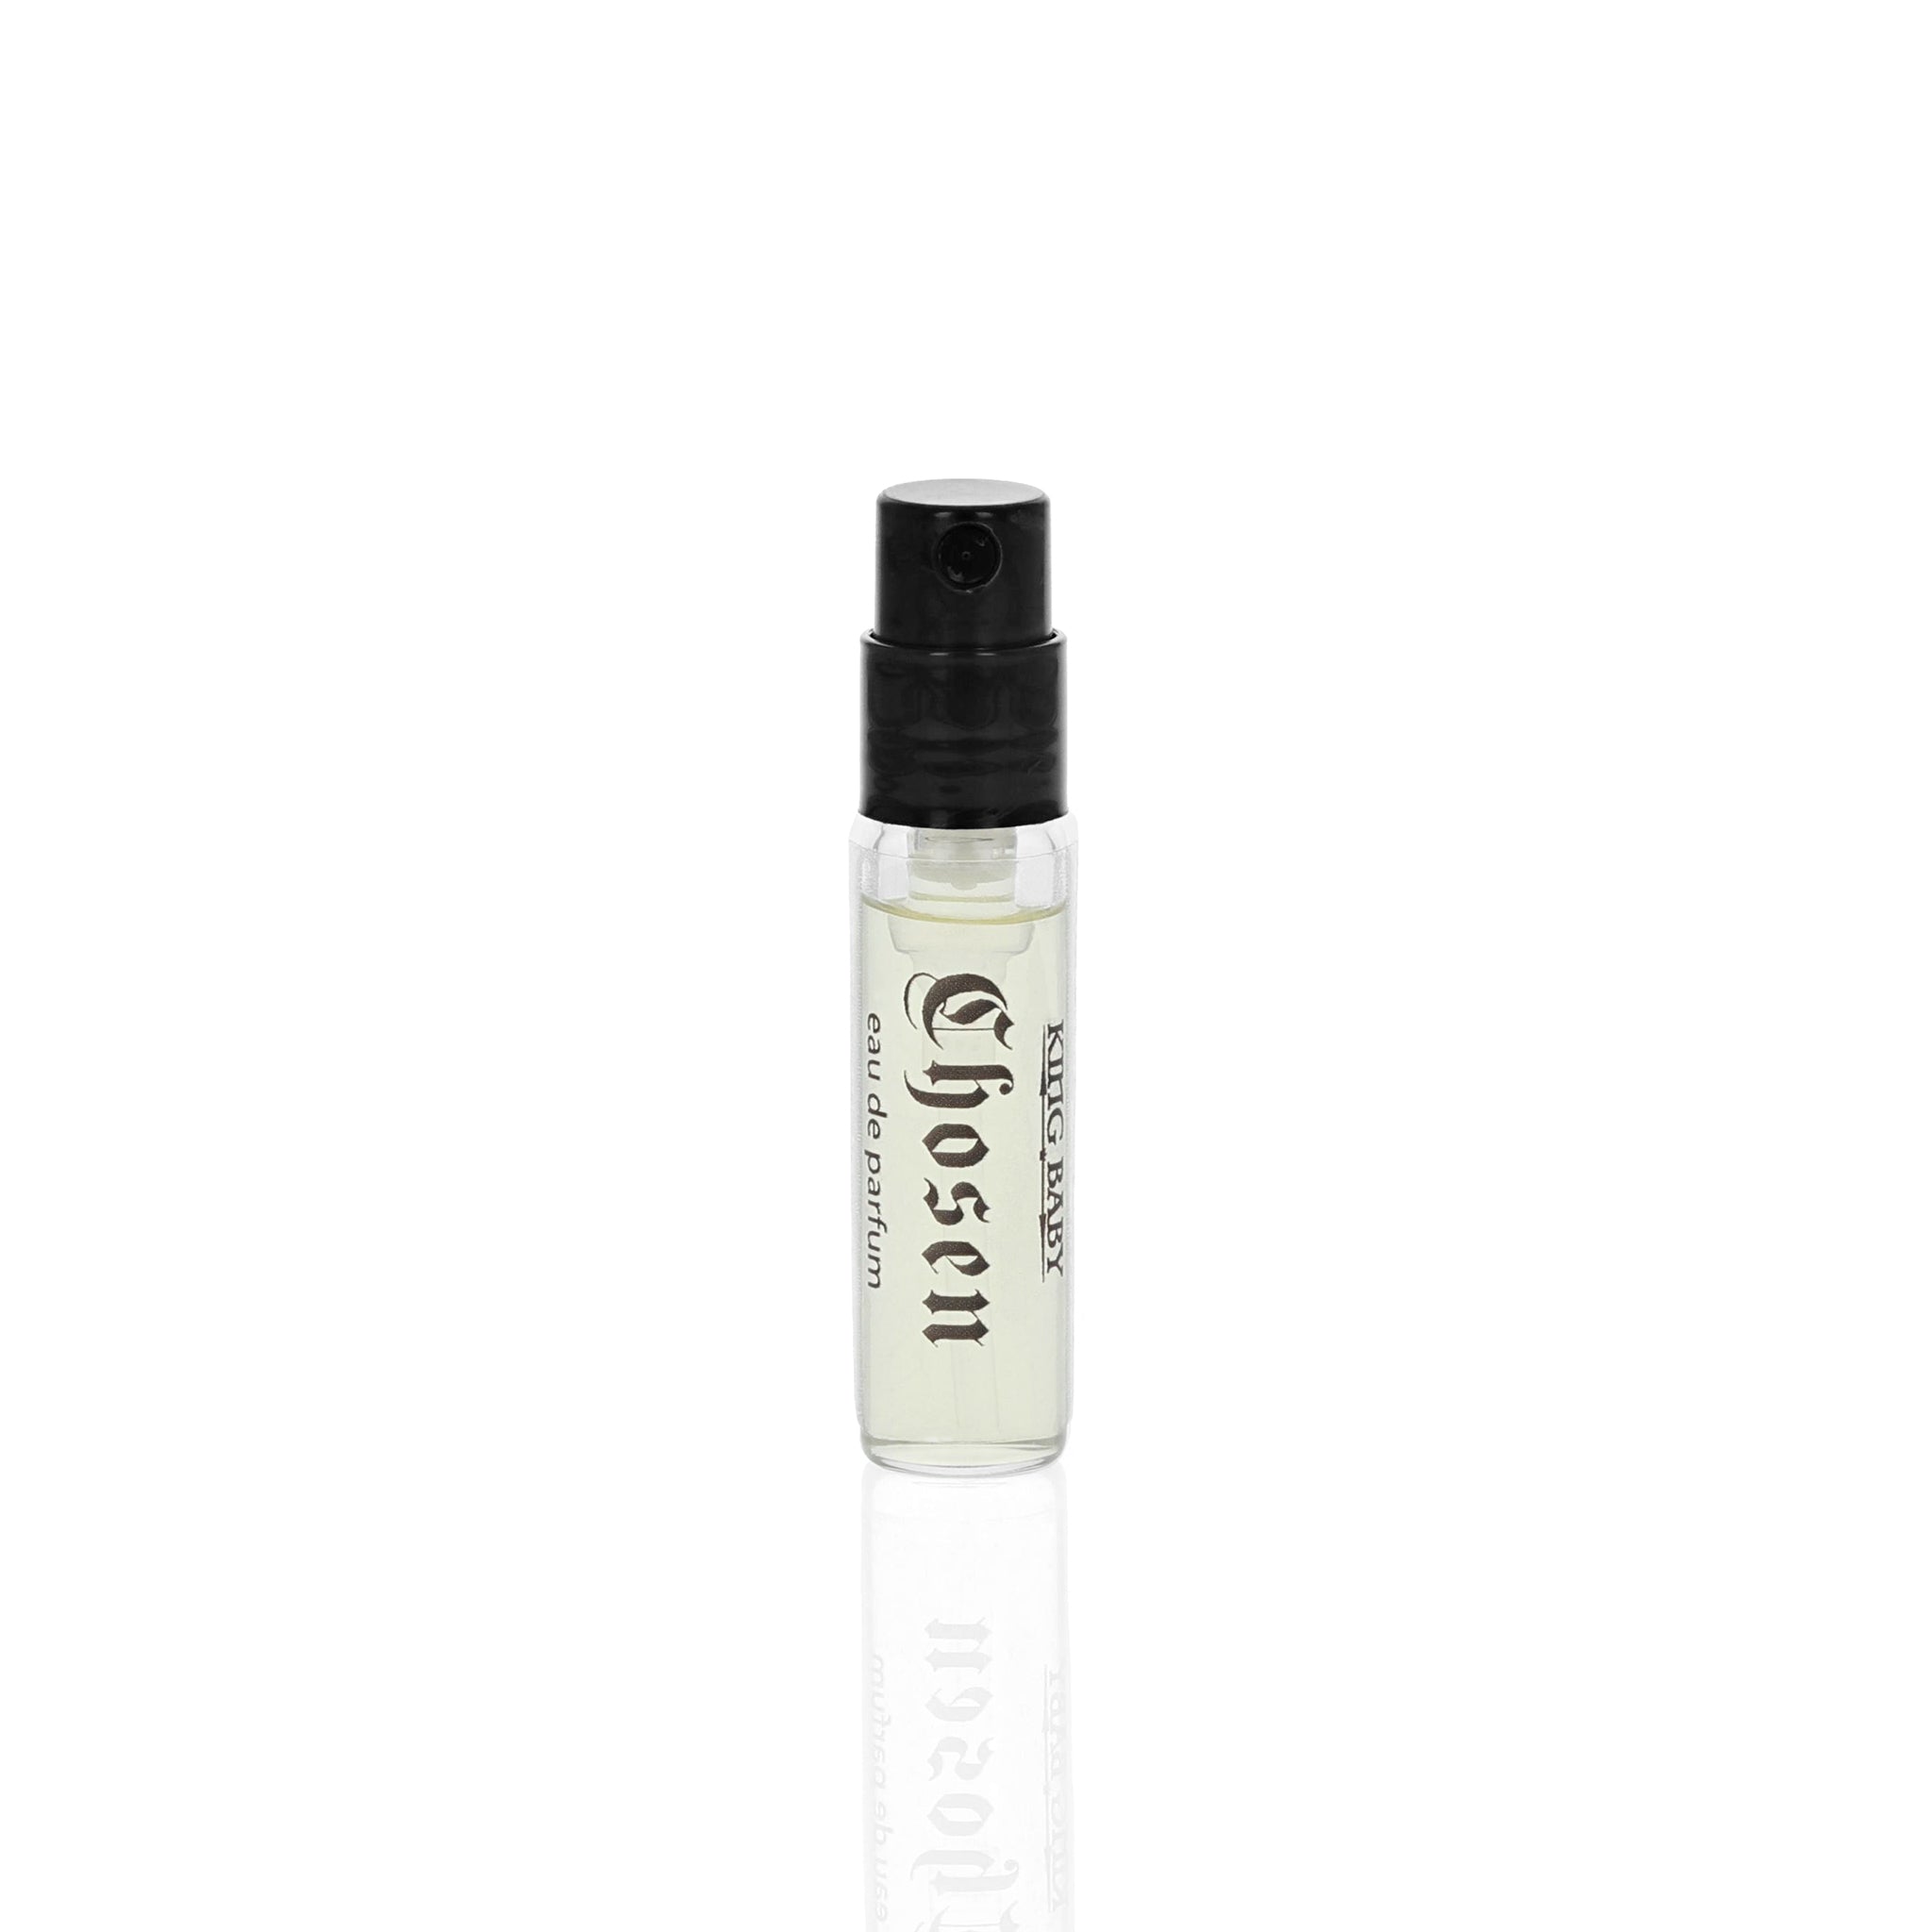 Photo of fragrance sample spray bottle